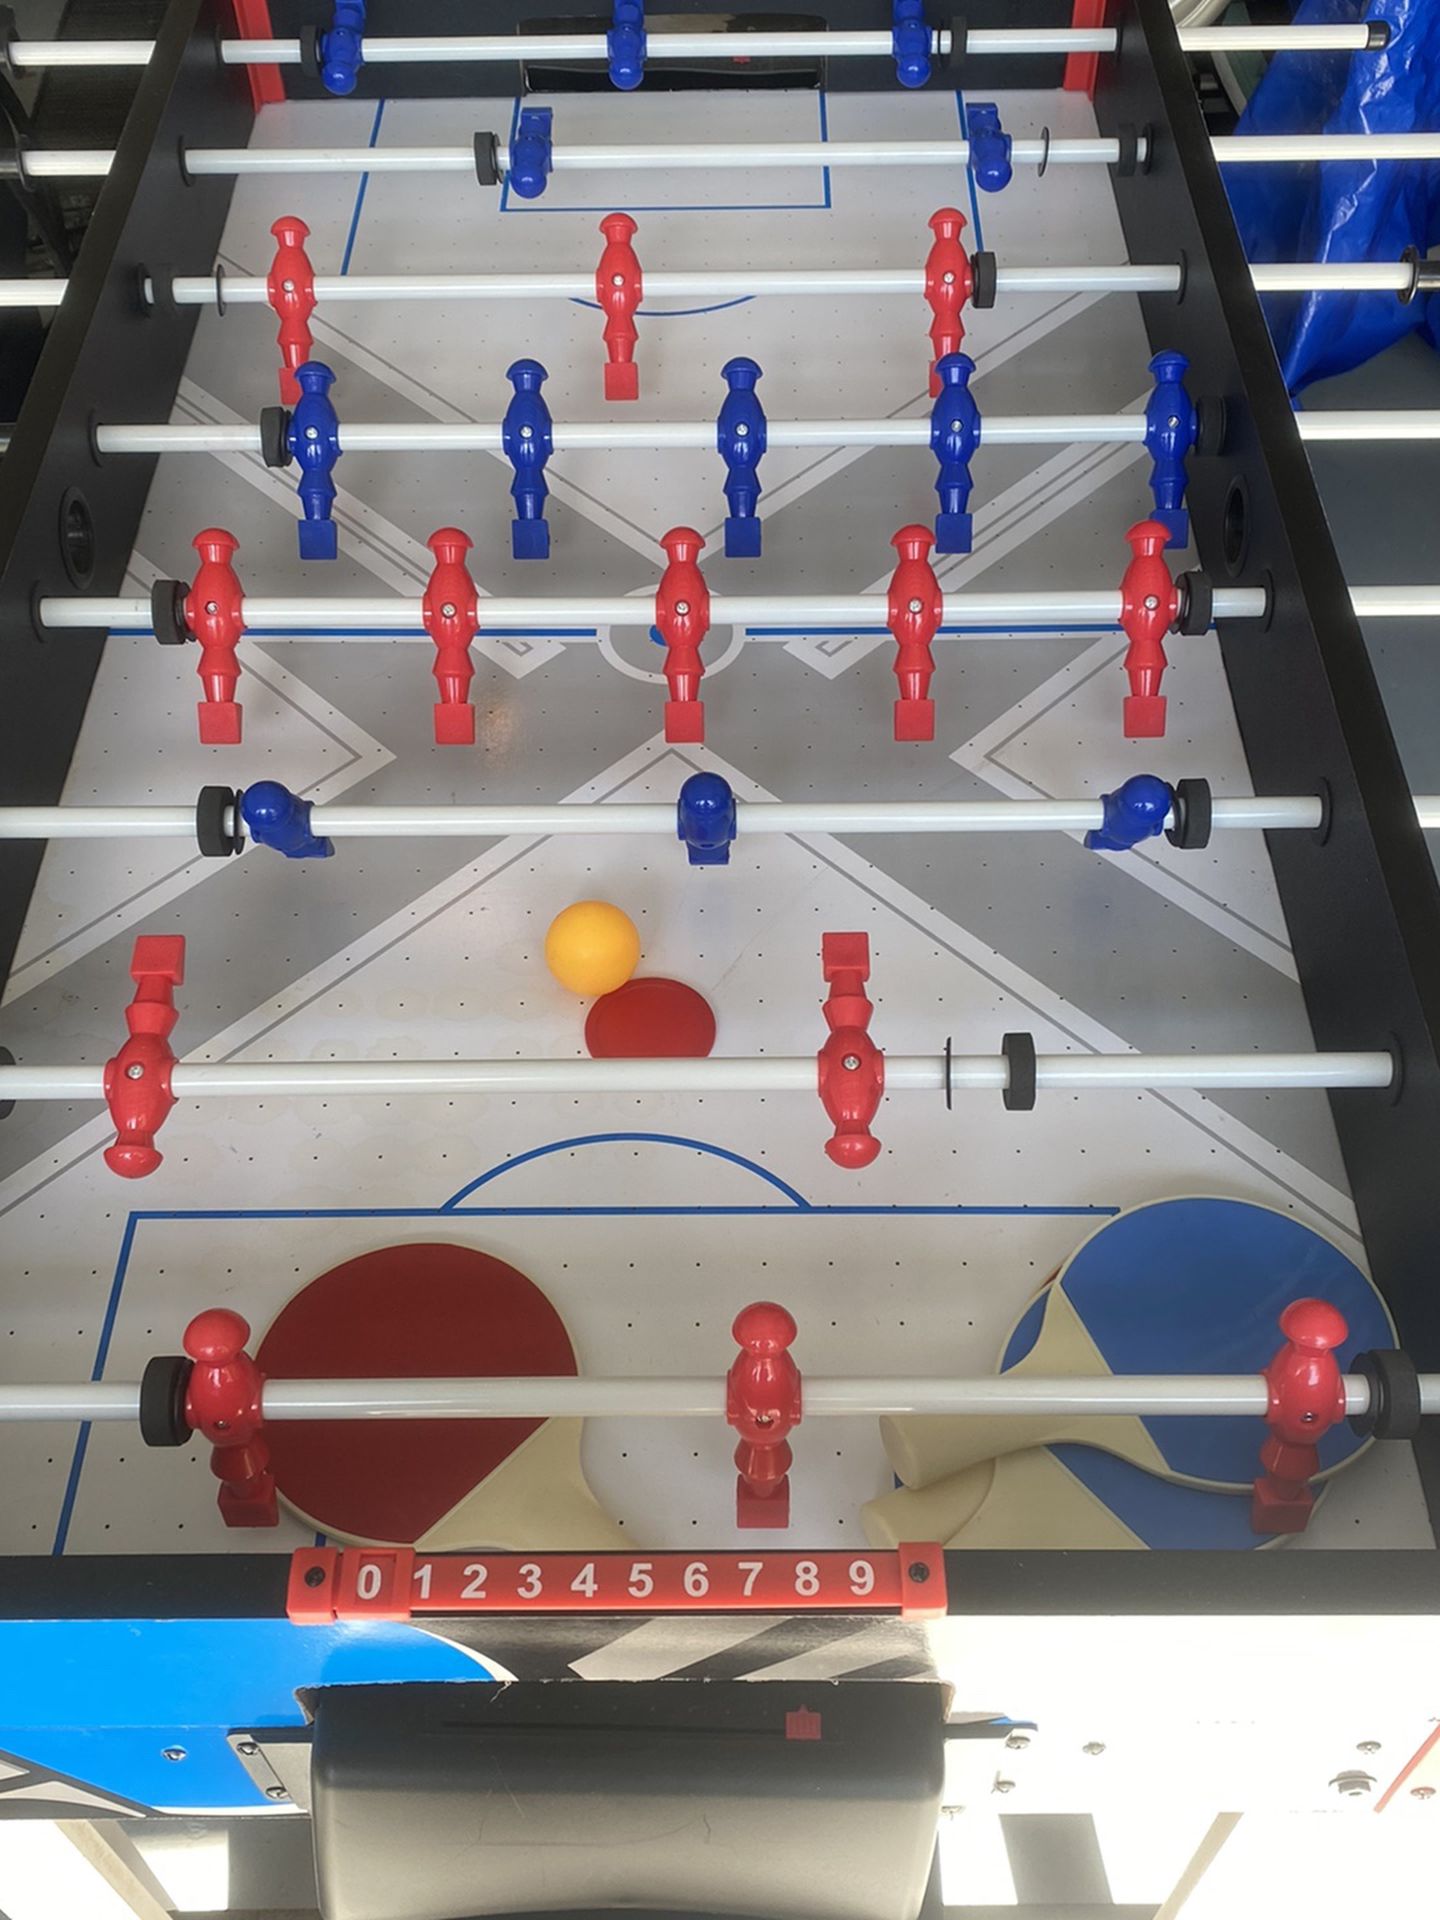 Ping Pong / Air hockey / and Foos ball Table